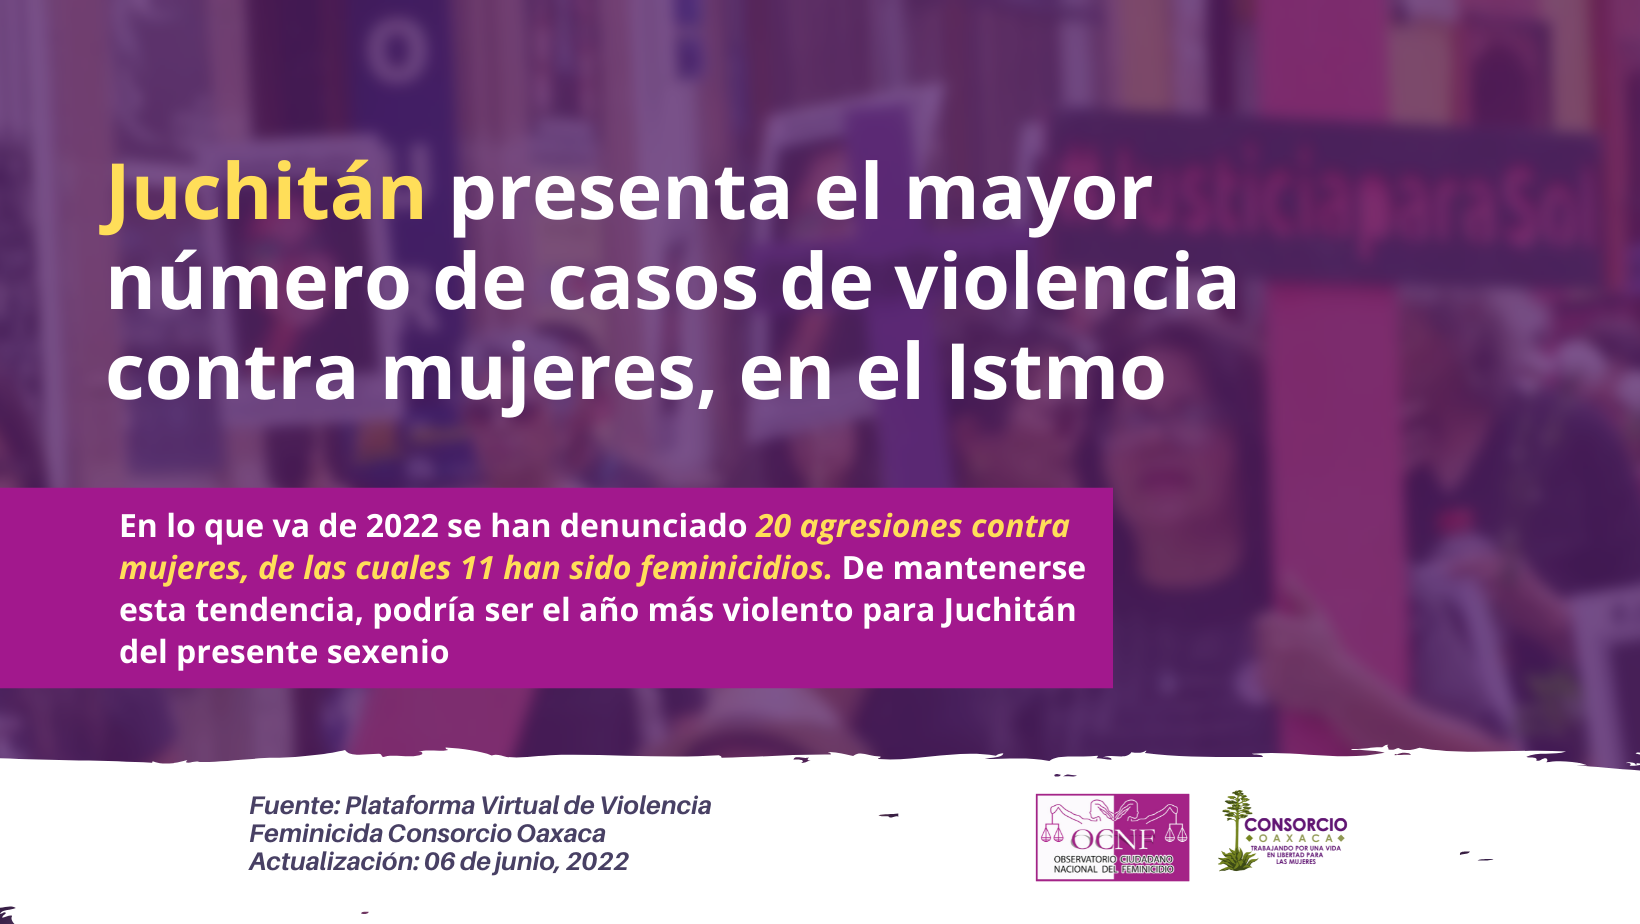 Juchitán presenta el mayor número de casos de violencia contra mujeres, en el Istmo